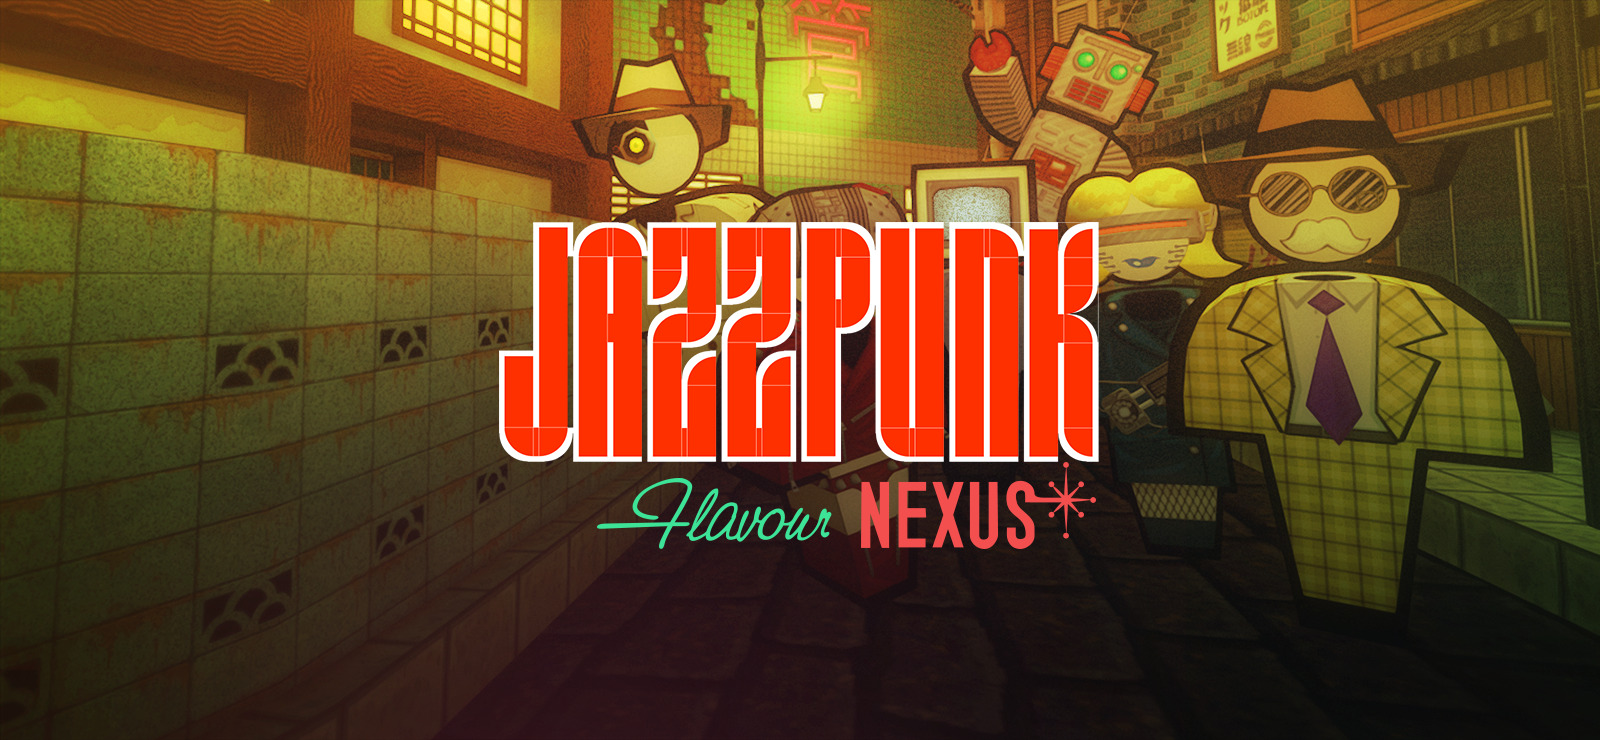 Jazzpunk: Flavour Nexus on 